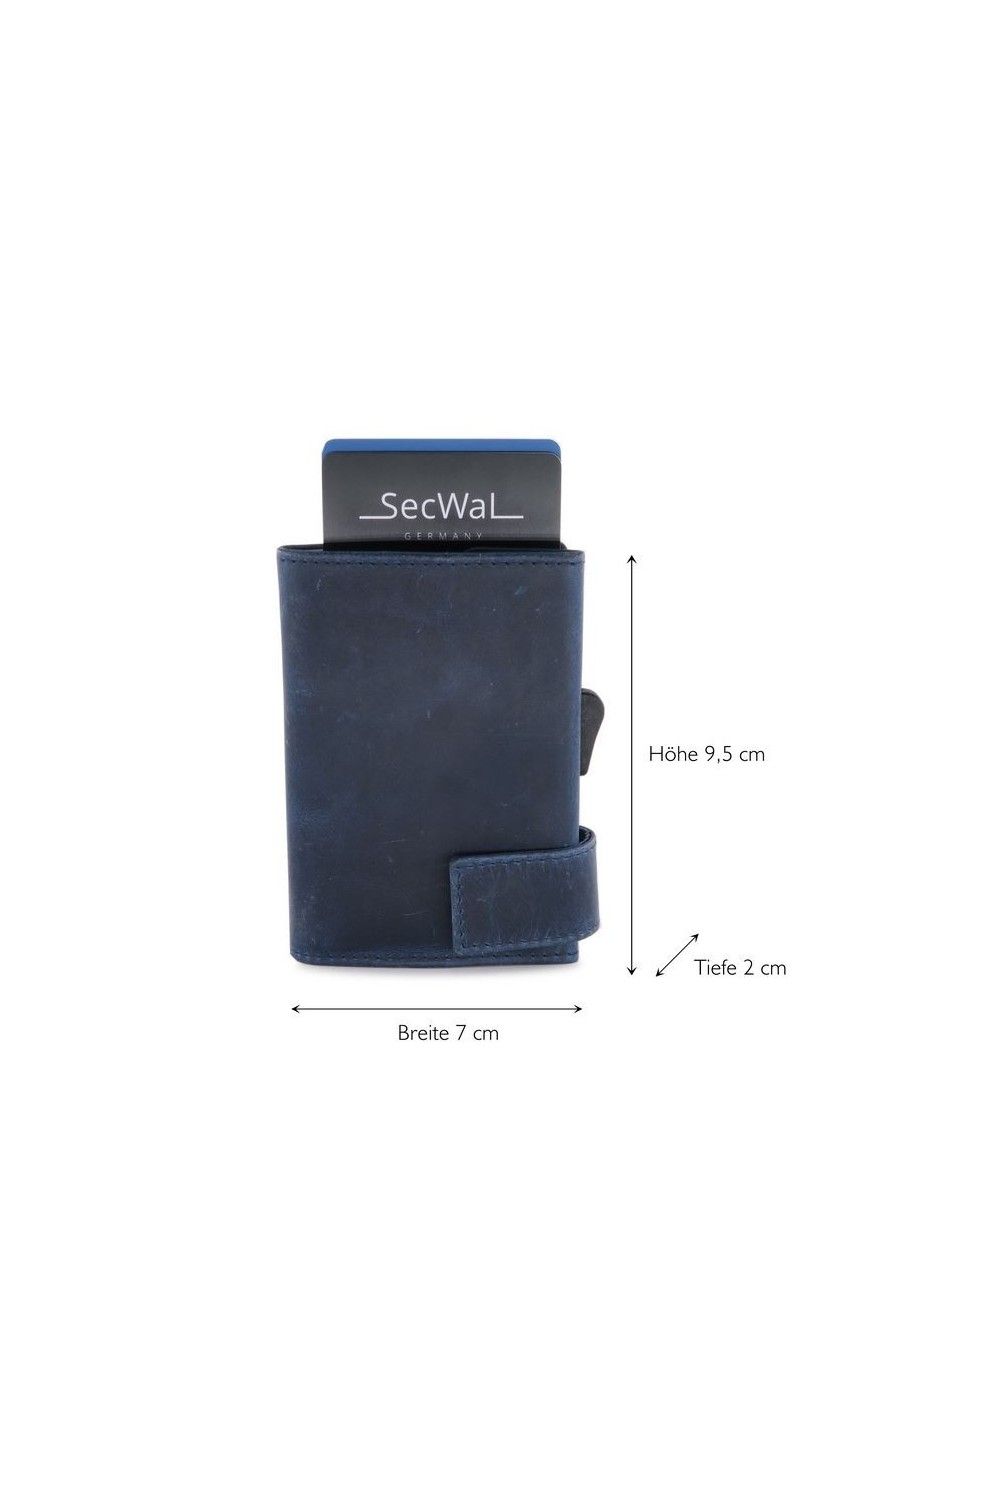 Porte-cartes SecWal RV Leather Hunter Beu